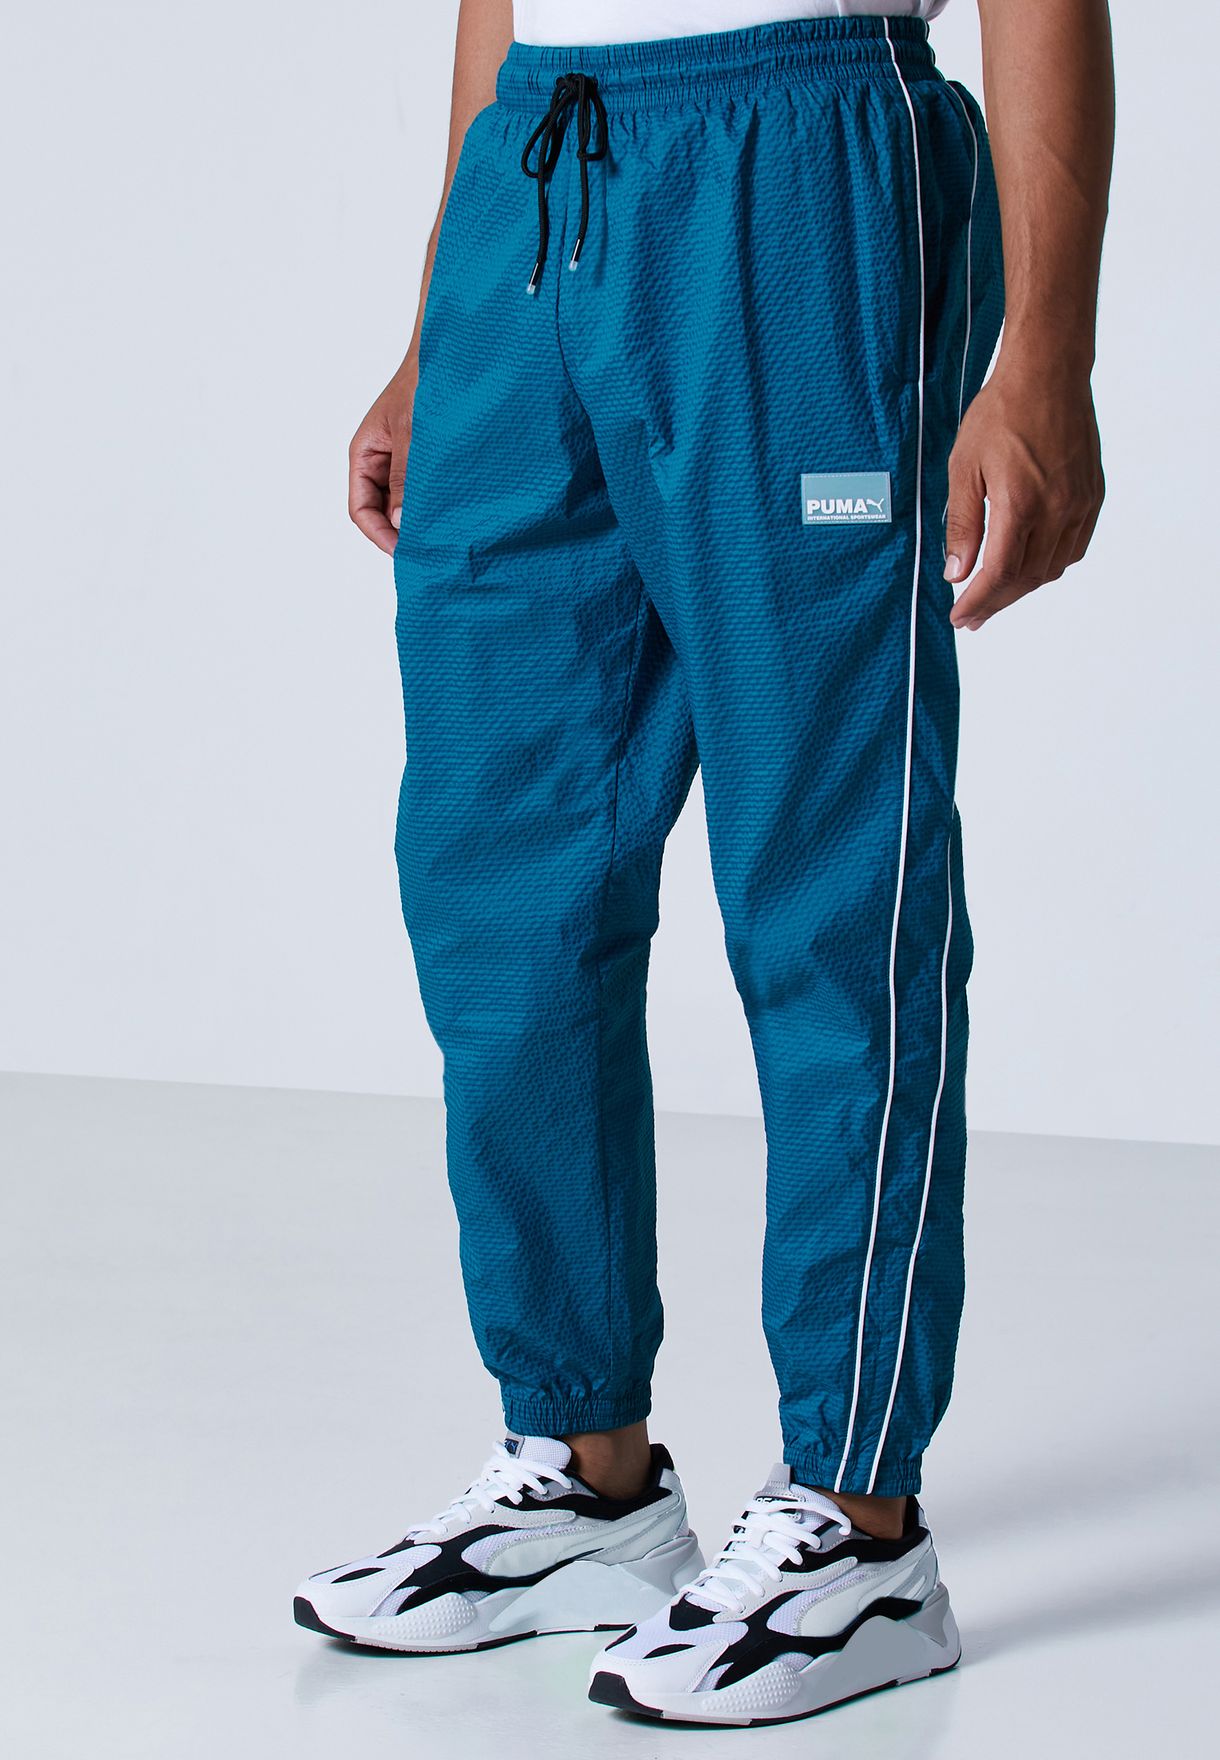 puma blue track pants